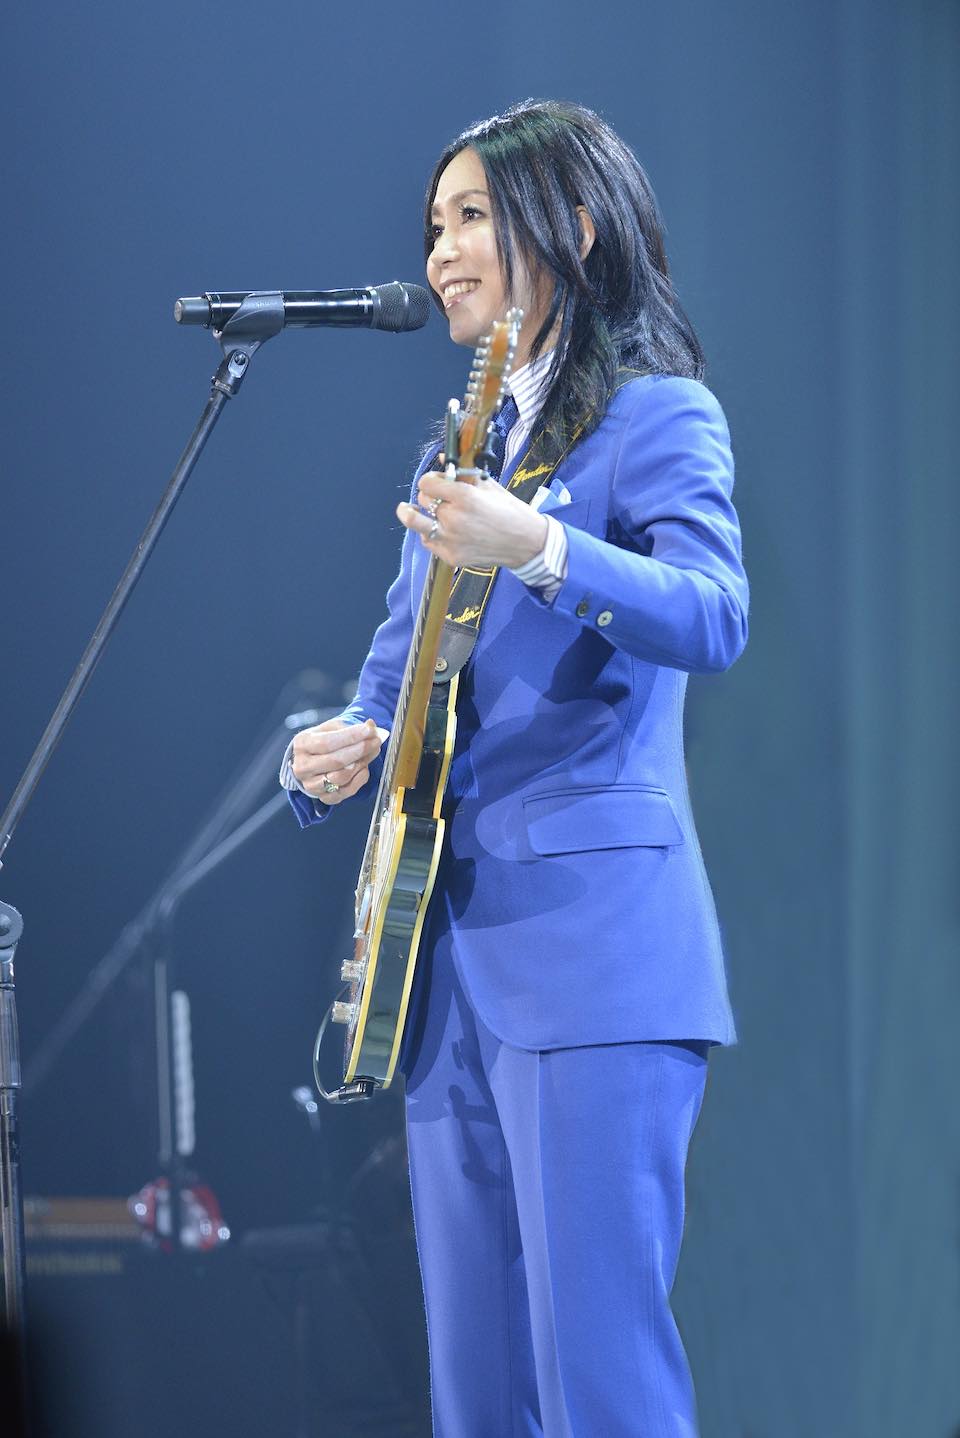 竹内まりや「souvenir2021 mariya takeuchi live」公演中止のお知らせ